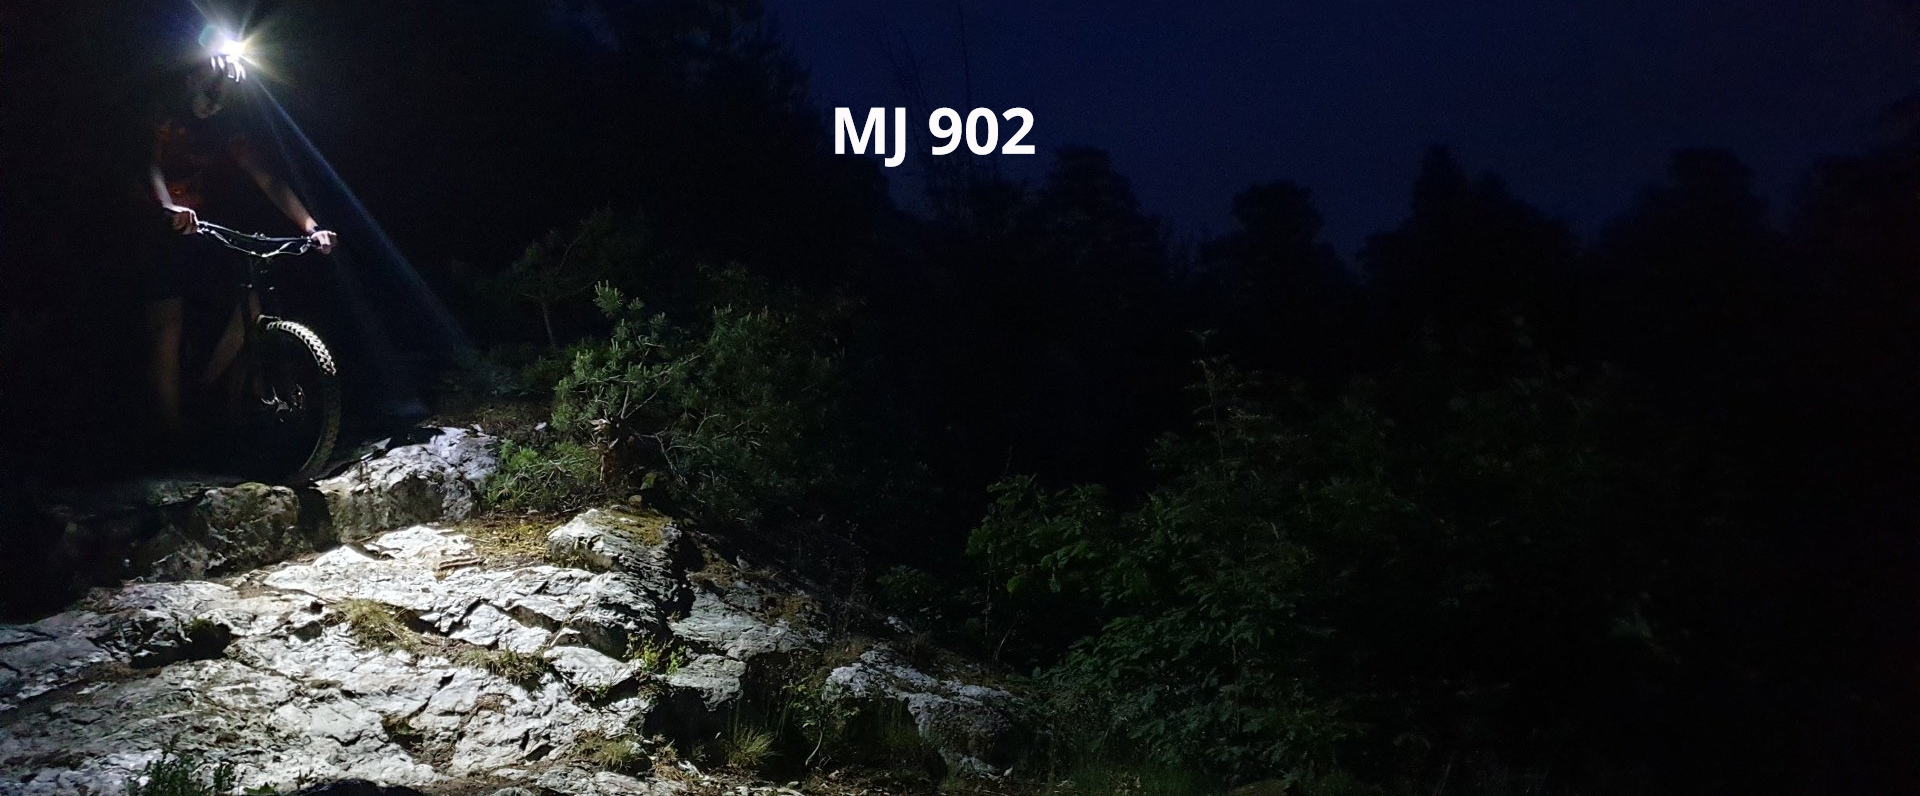 Magicshine Helmlampe MJ 902 mit Fahrradfahrer und Mountainbike im Wald auf Stein, sowie 1600 Lumen Leuchtkraft